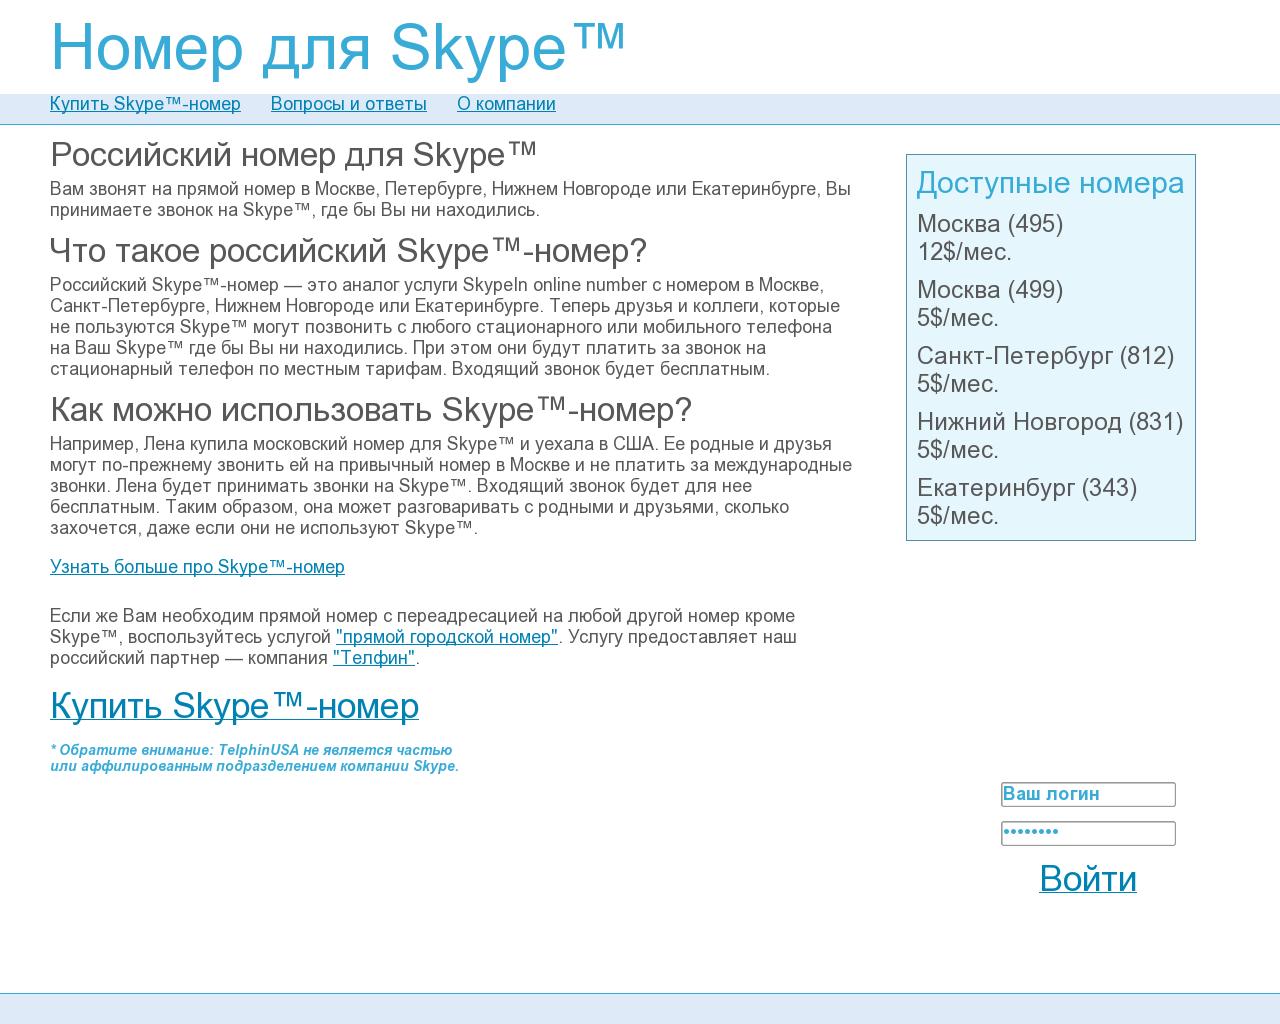 Изображение сайта skypeinrus.ru в разрешении 1280x1024